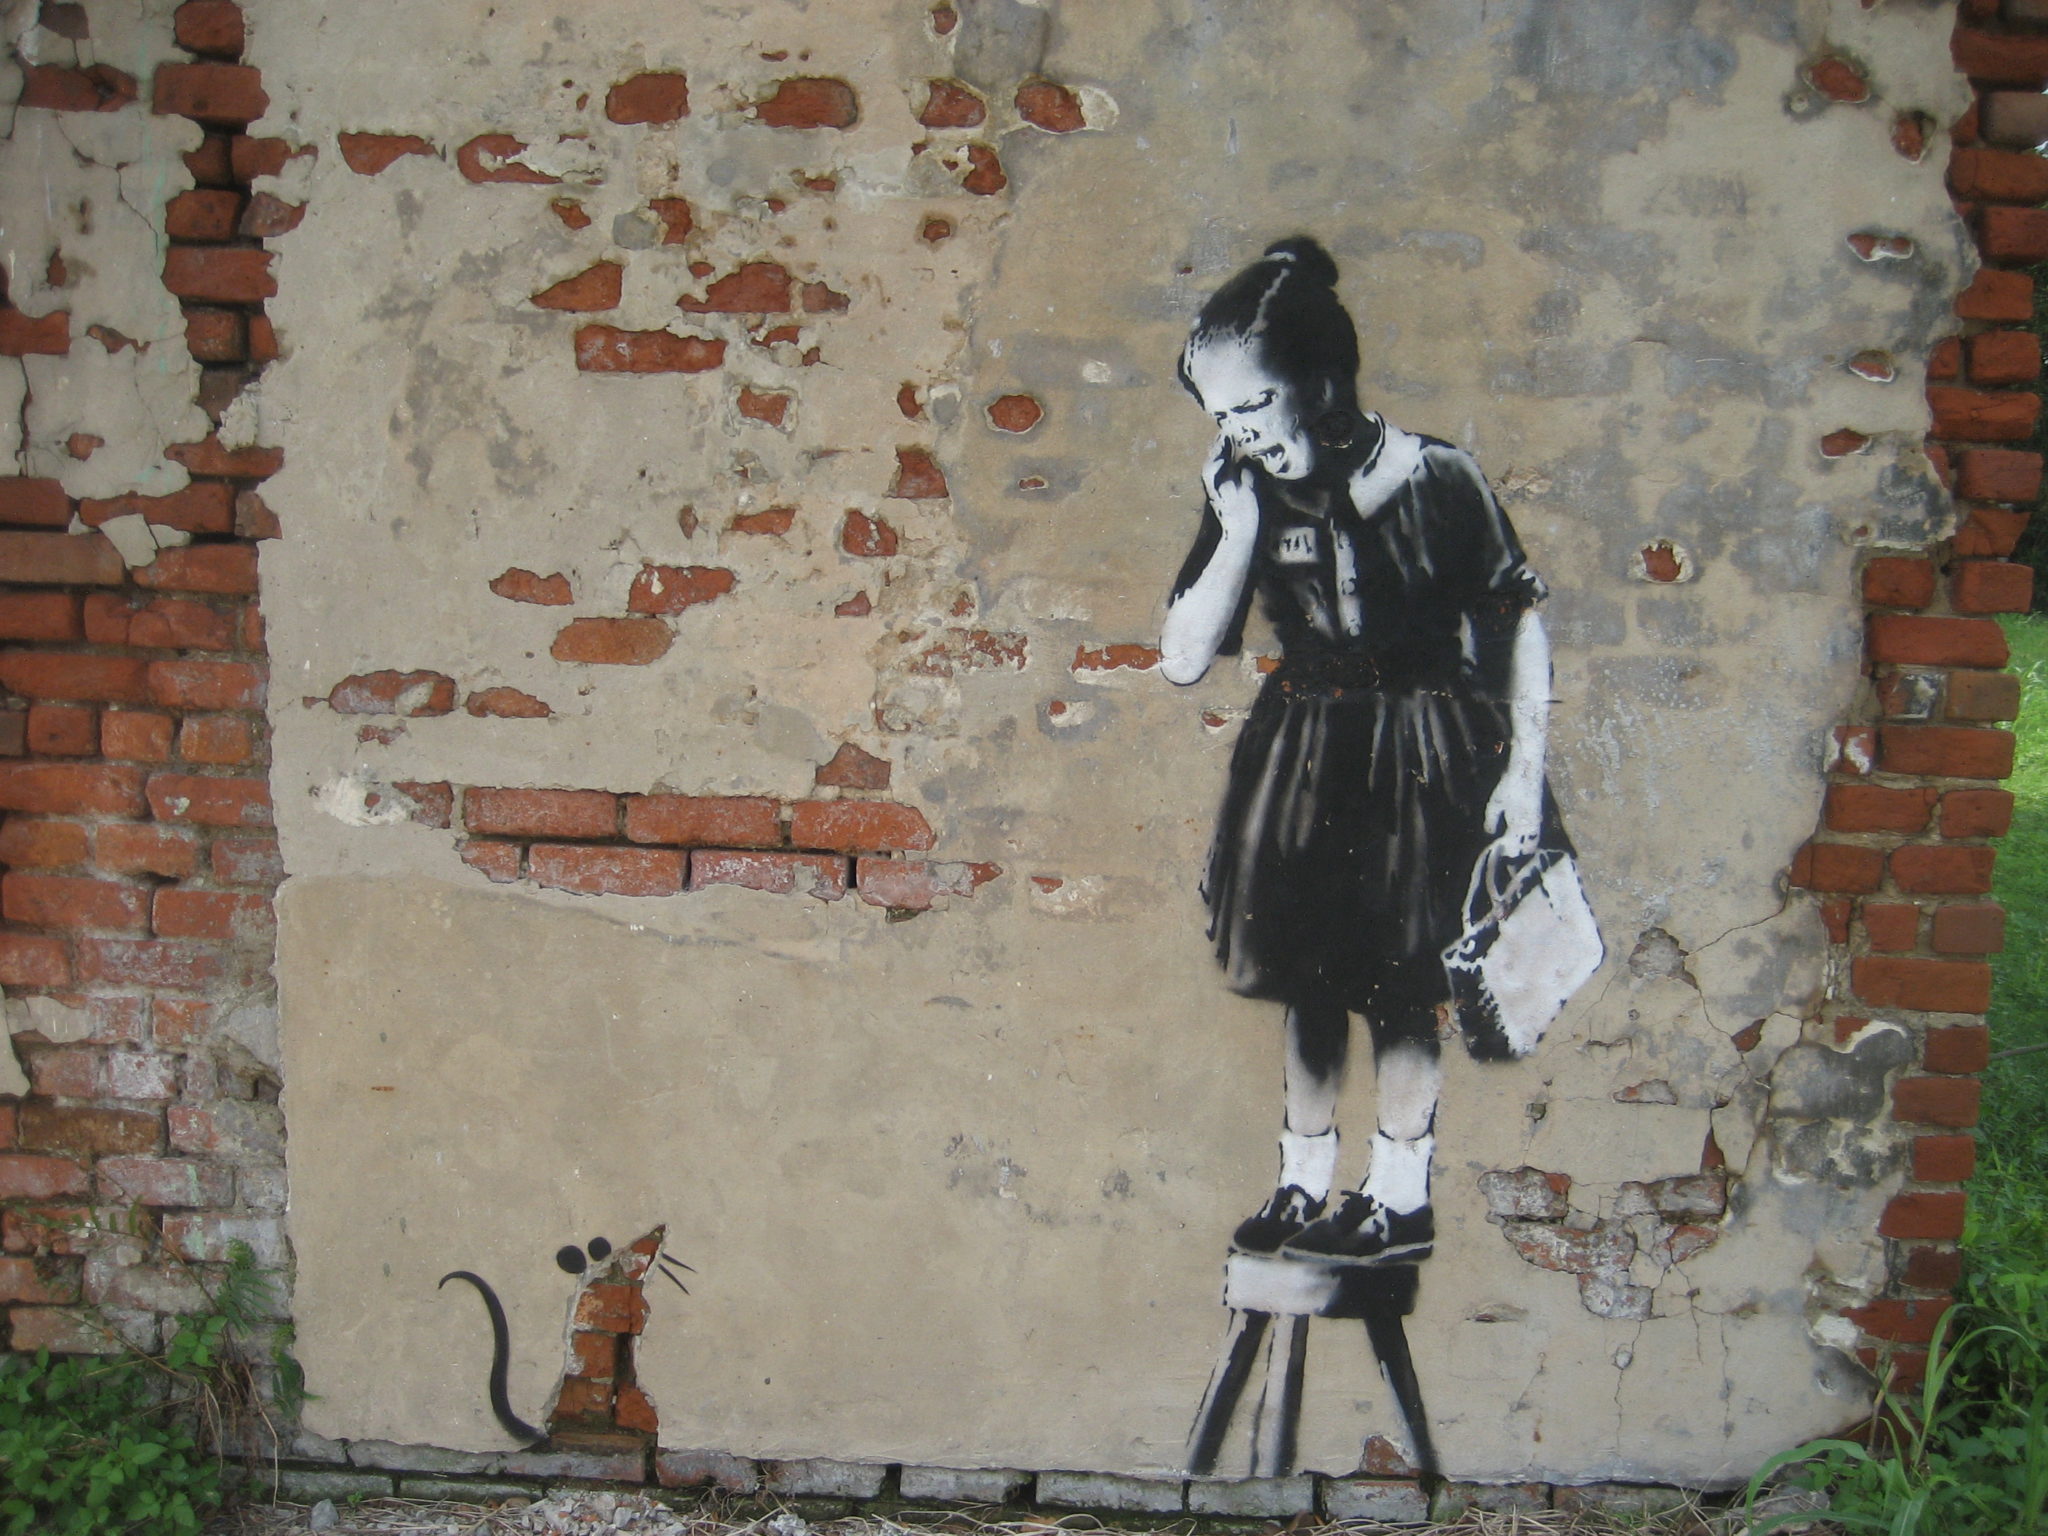 banksy ratgirl - një nga veprat e tij më të shtrenjta të artit